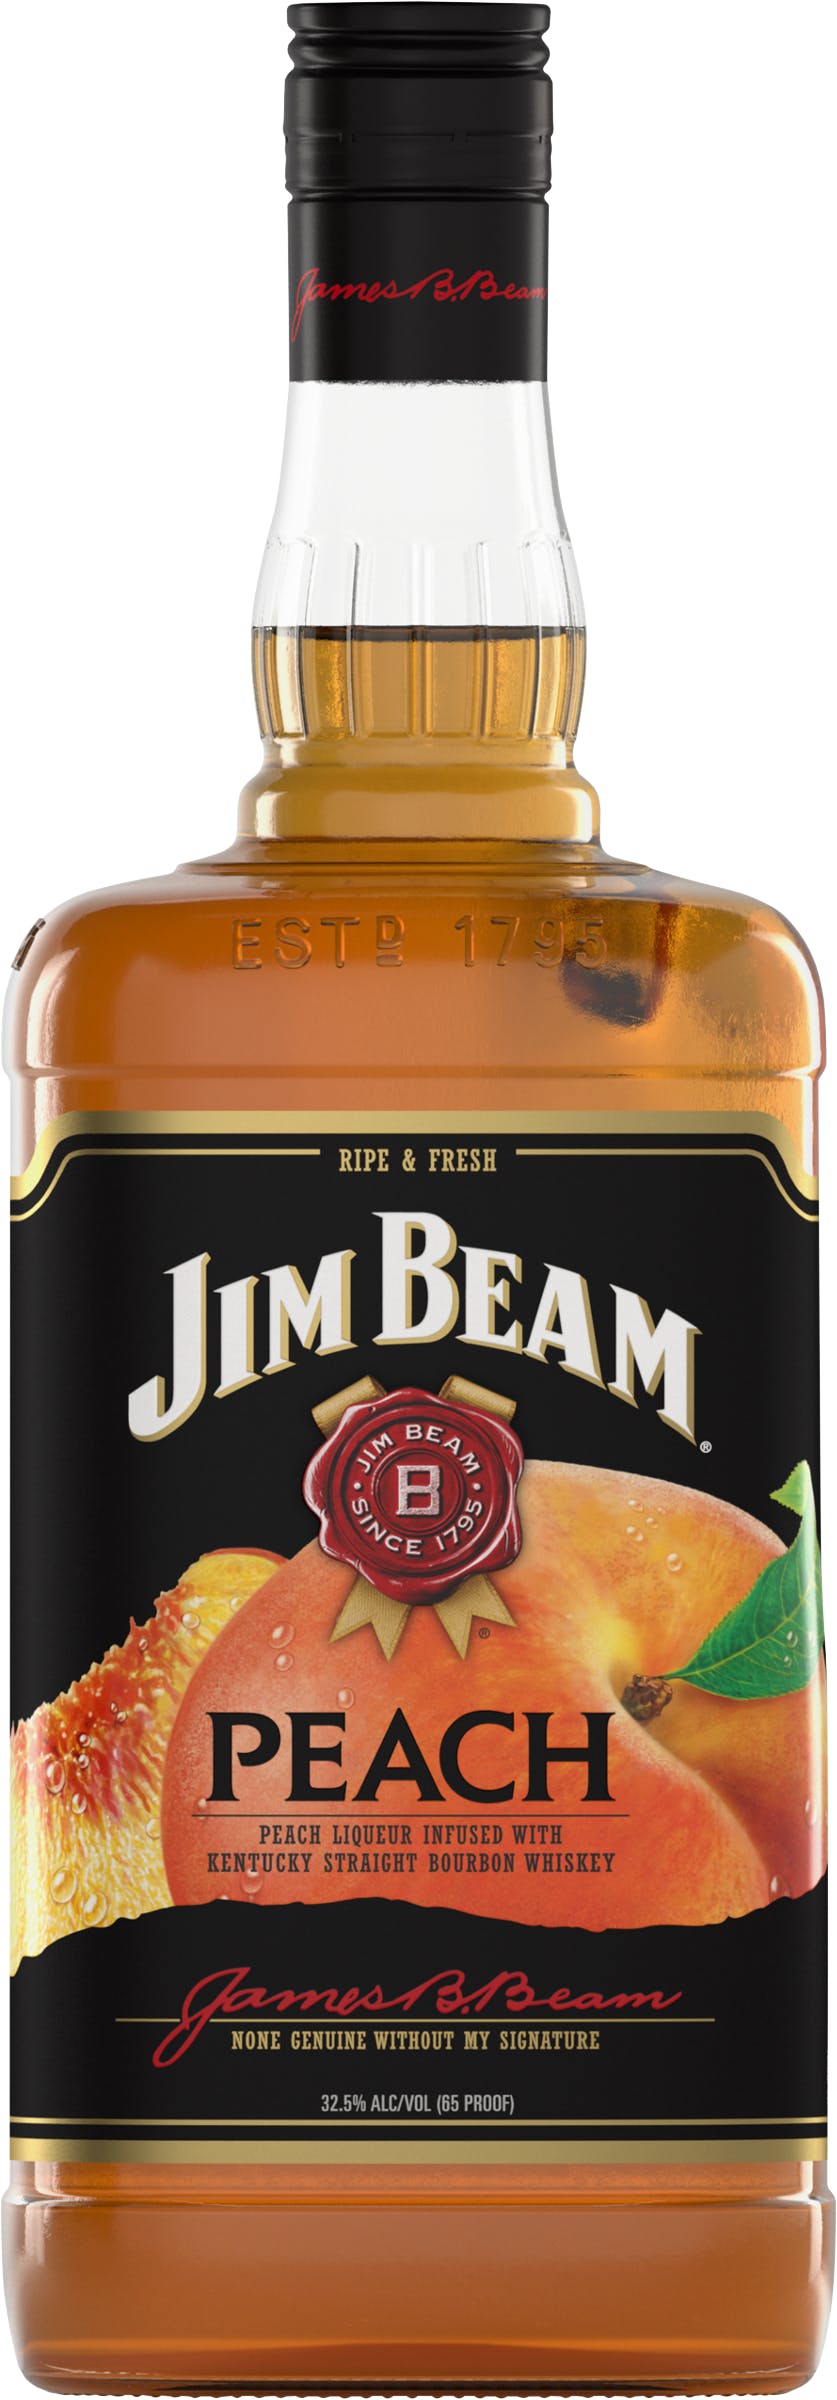 Beam Argonaut & Peach Jim Liquor Wine 1.75L -